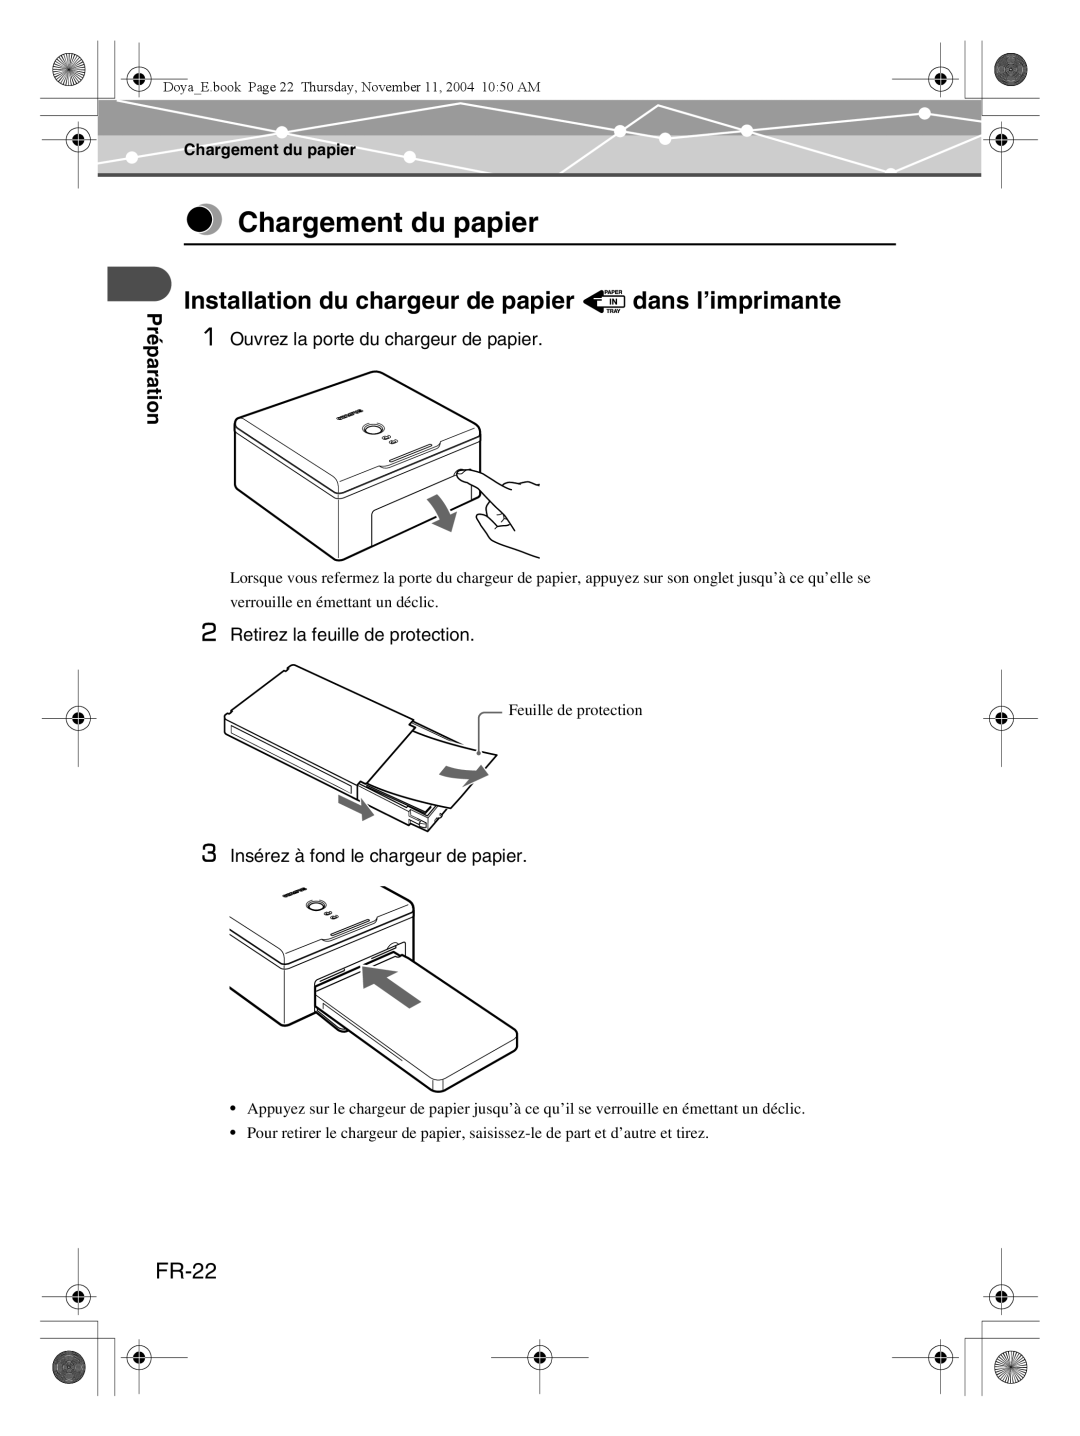 Olympus P-S100 user manual Chargement du papier, Installation du chargeur de papier dans l’imprimante, FR-22, Préparation 